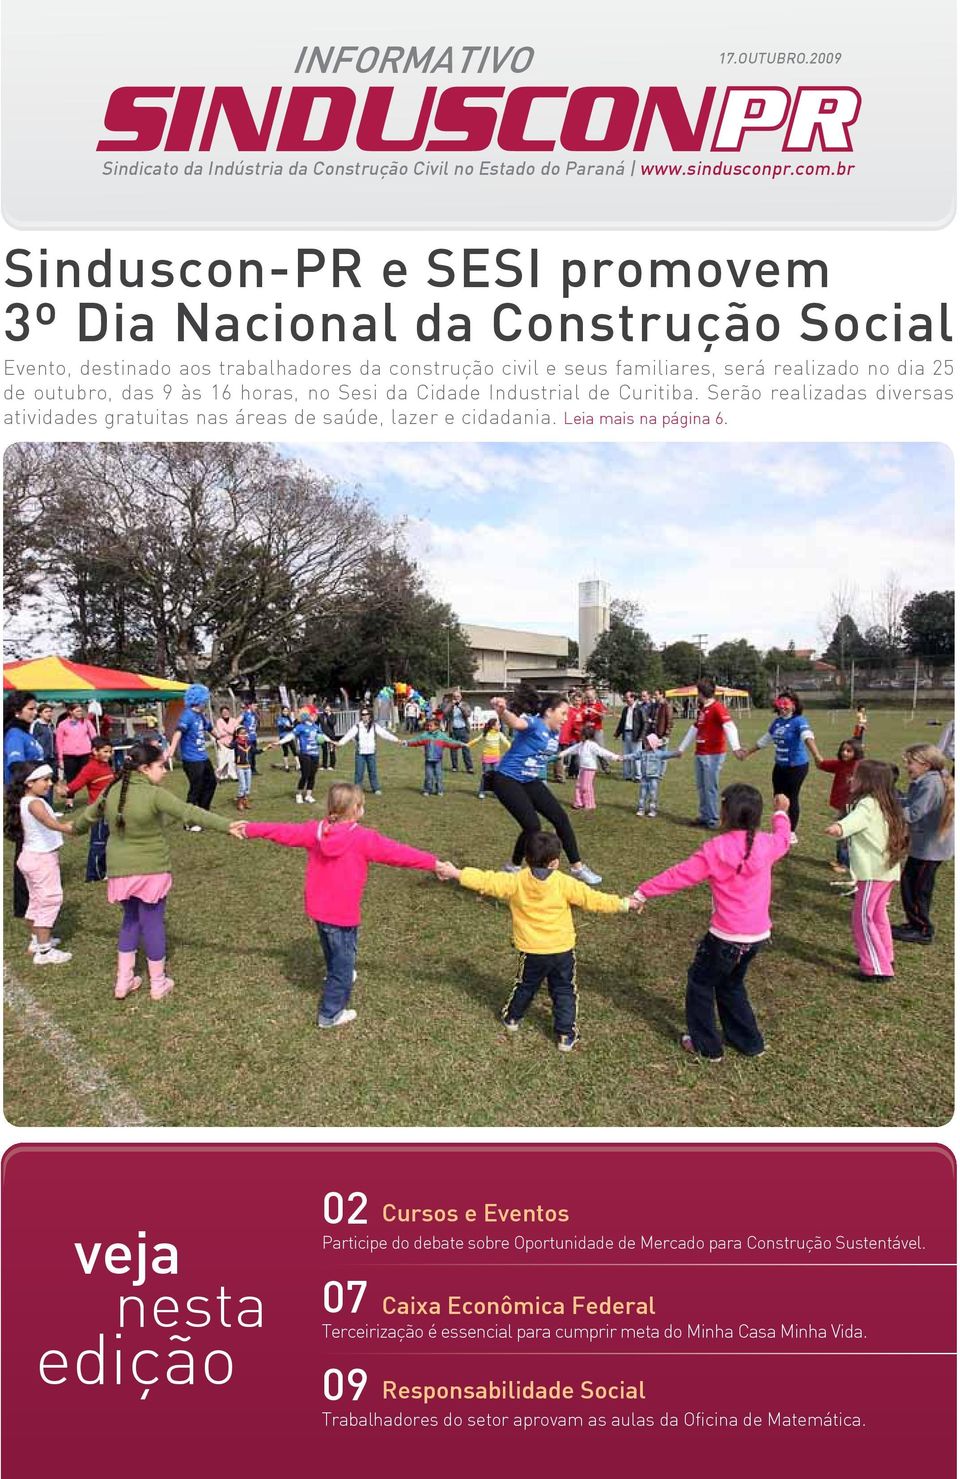 16 horas, no Sesi da Cidade Industrial de Curitiba. Serão realizadas diversas atividades gratuitas nas áreas de saúde, lazer e cidadania. Leia mais na página 6.